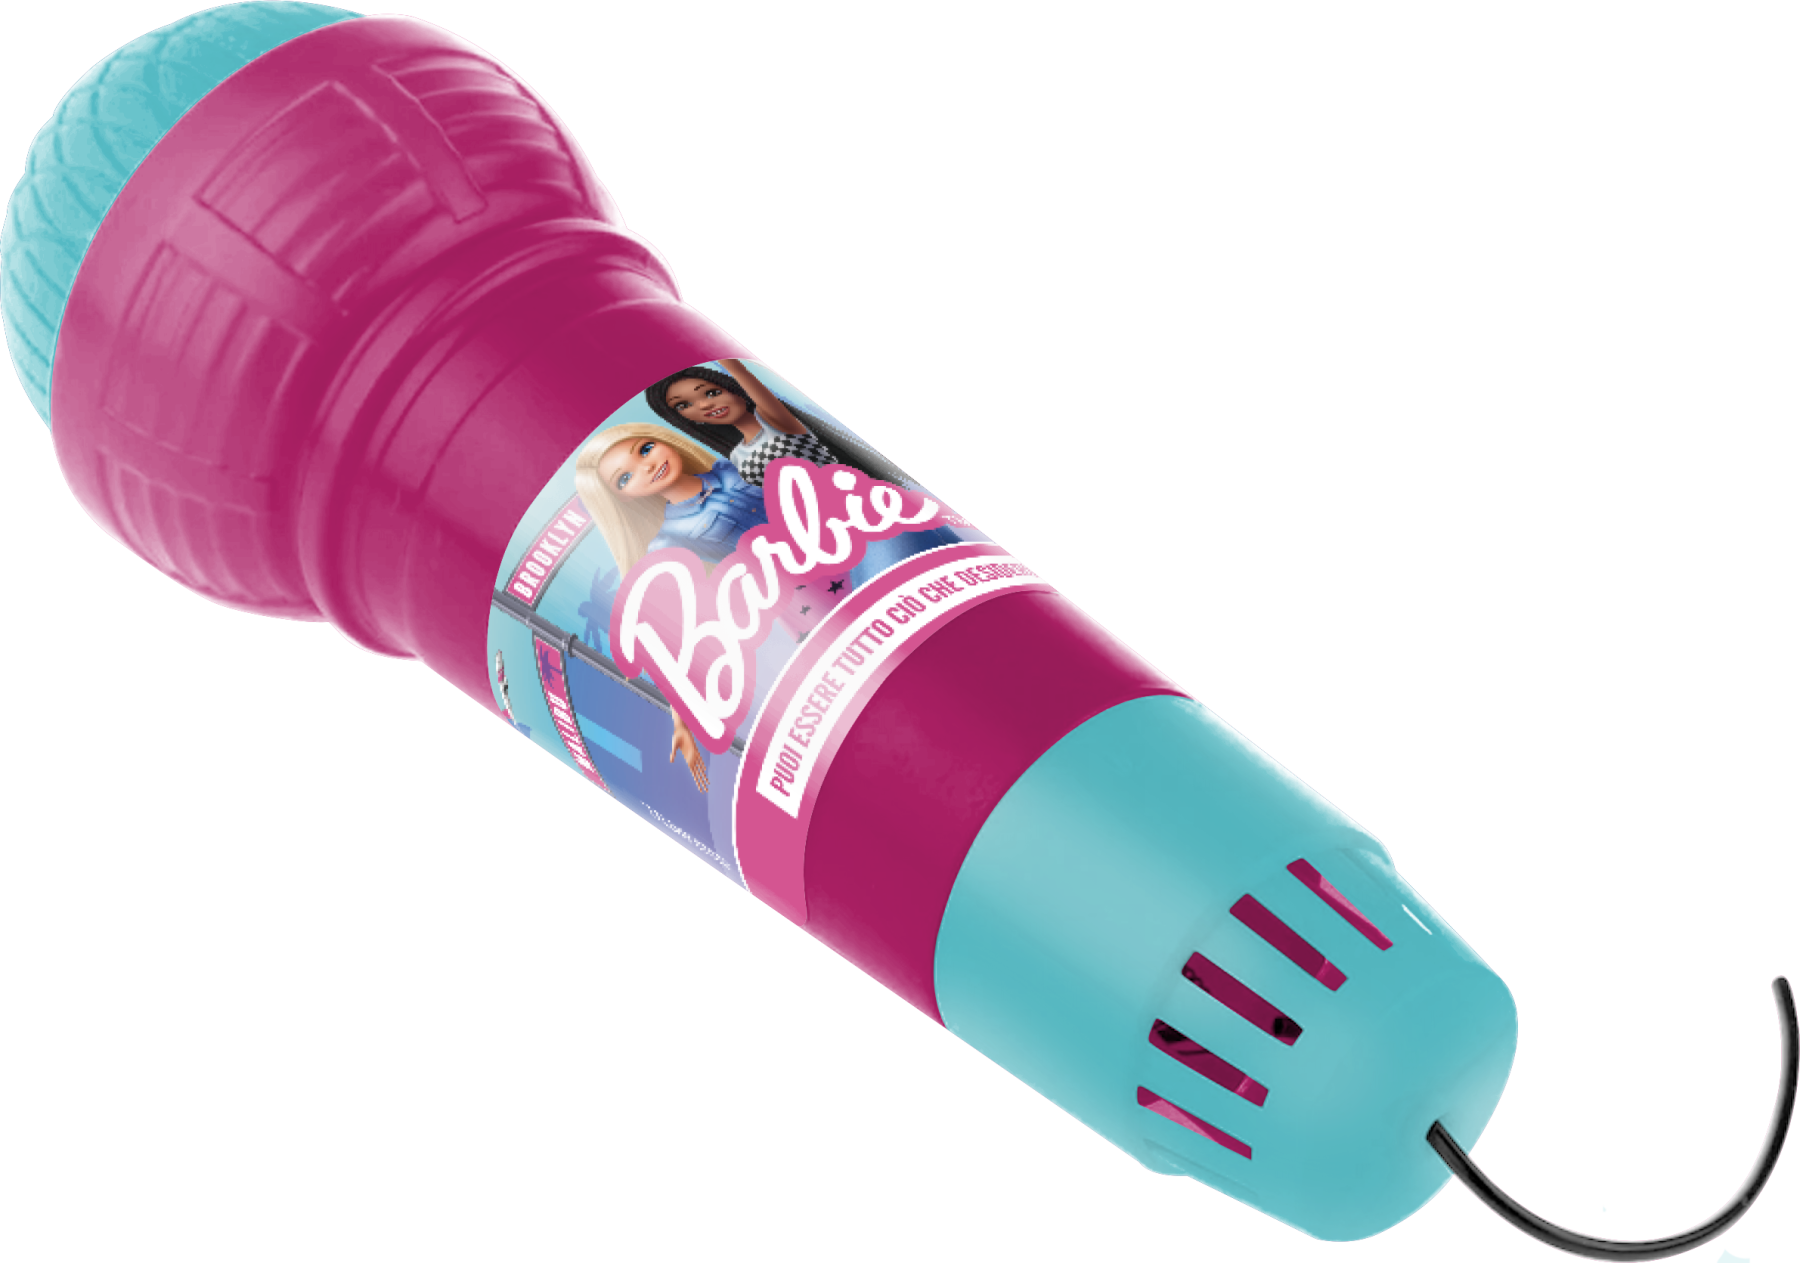 Barbie - uovissimo, include 1 barbie malibu e tanti accessori per essere una pop-star, 1 microfono, 1 bracciale pop-it, stickers glitterati e gadget a sorpresa, giocattolo, 3+ anni, hpx49 - Barbie